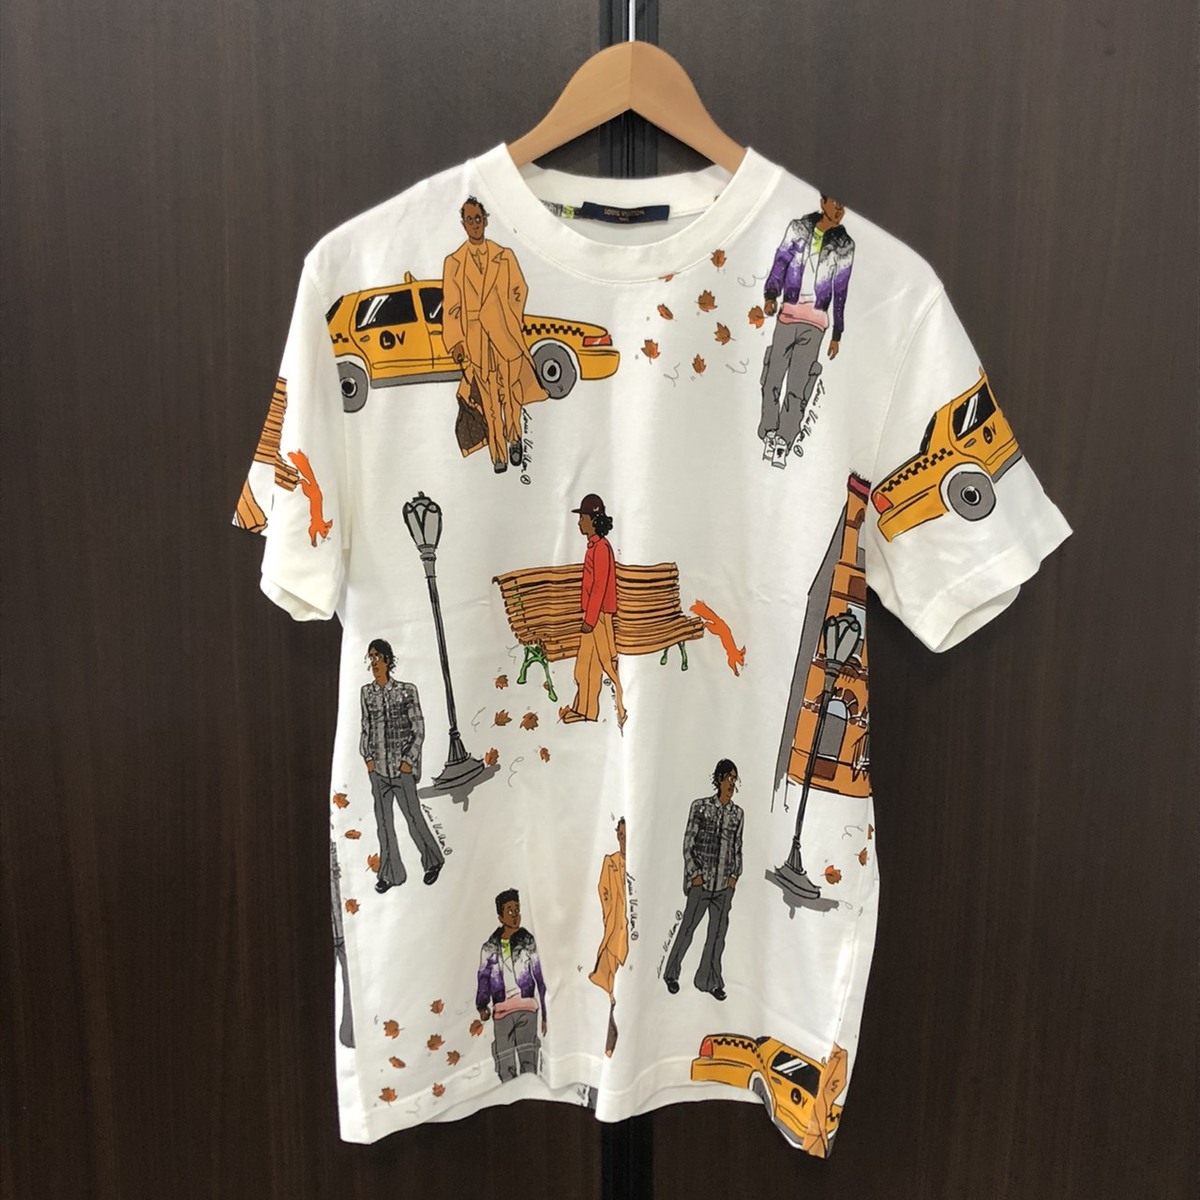 エコスタイル大阪心斎橋店にて、ルイヴィトンの2019年(ヴァージル・アブロー)モデルである、ニューウォーカーズプリンテッド半袖Tシャツ/半袖